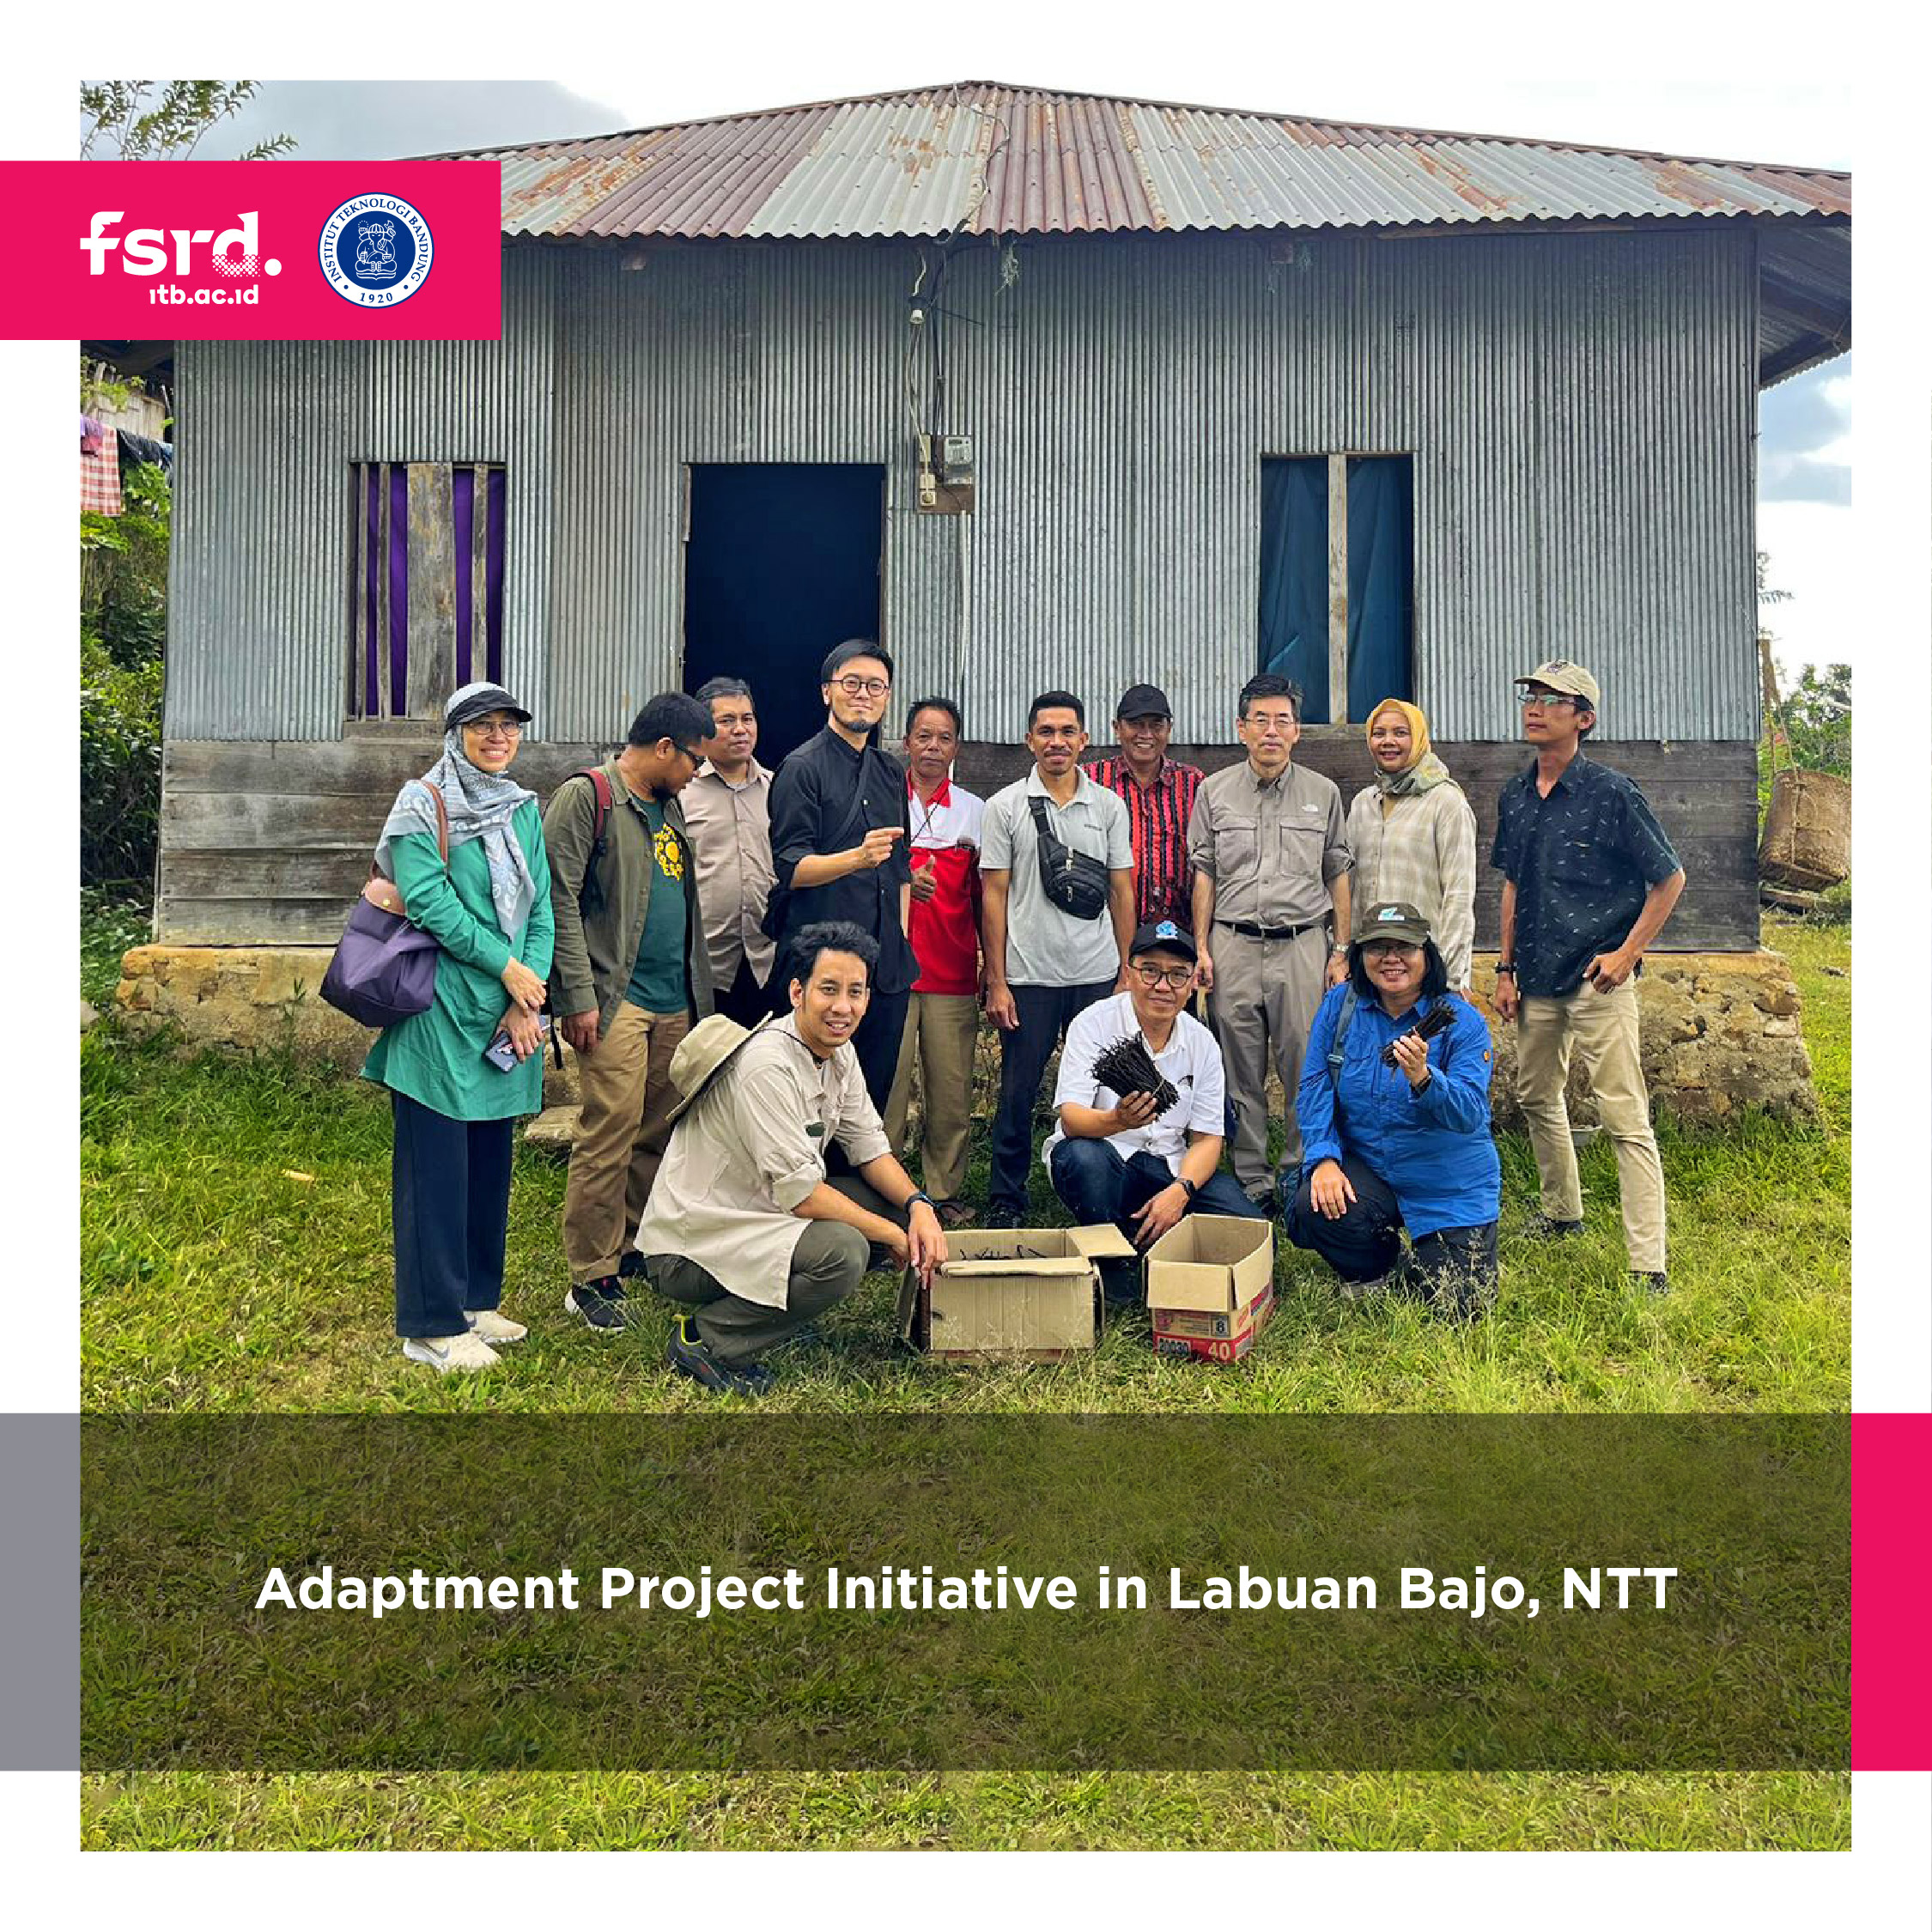 Adaptment Project Initiative in Labuan Bajo, NTT